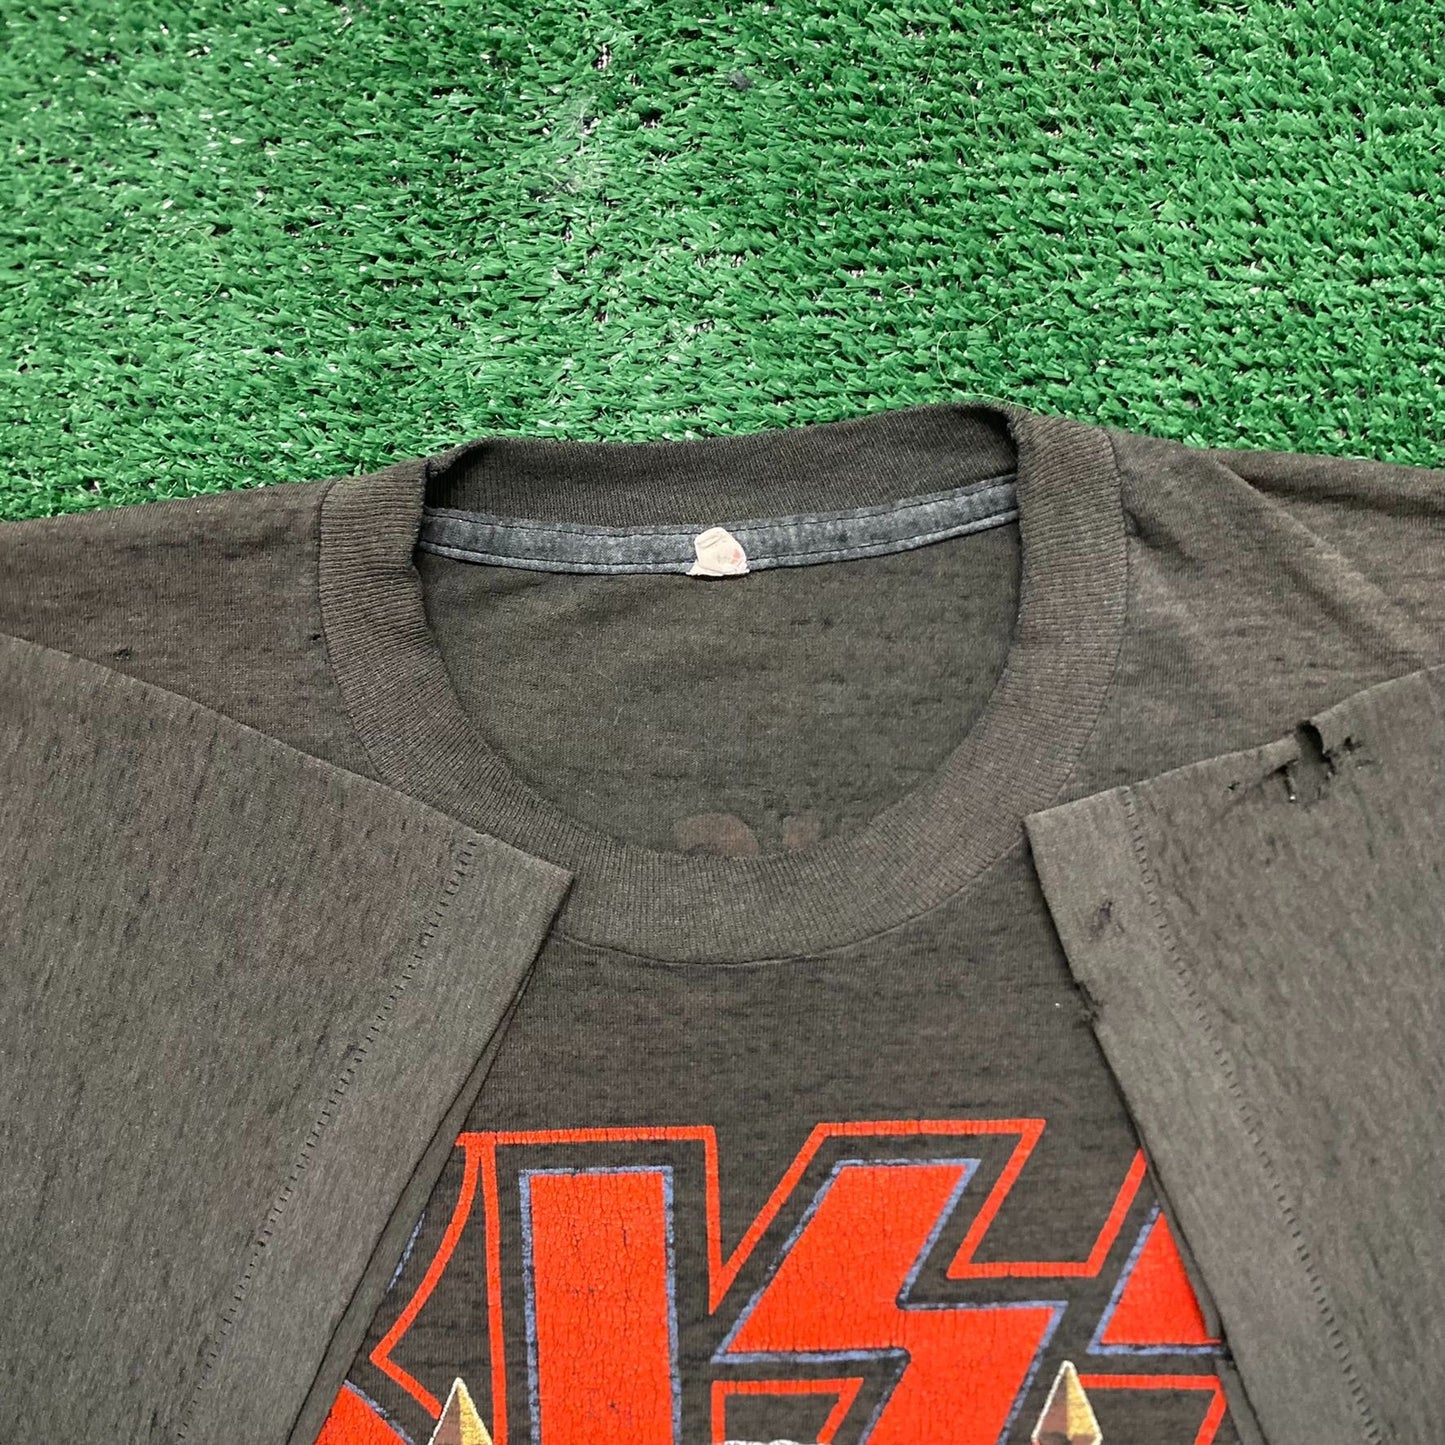 Vintage 80s KISS Gene Simmons Dirty Job Metal Band T-Shirt